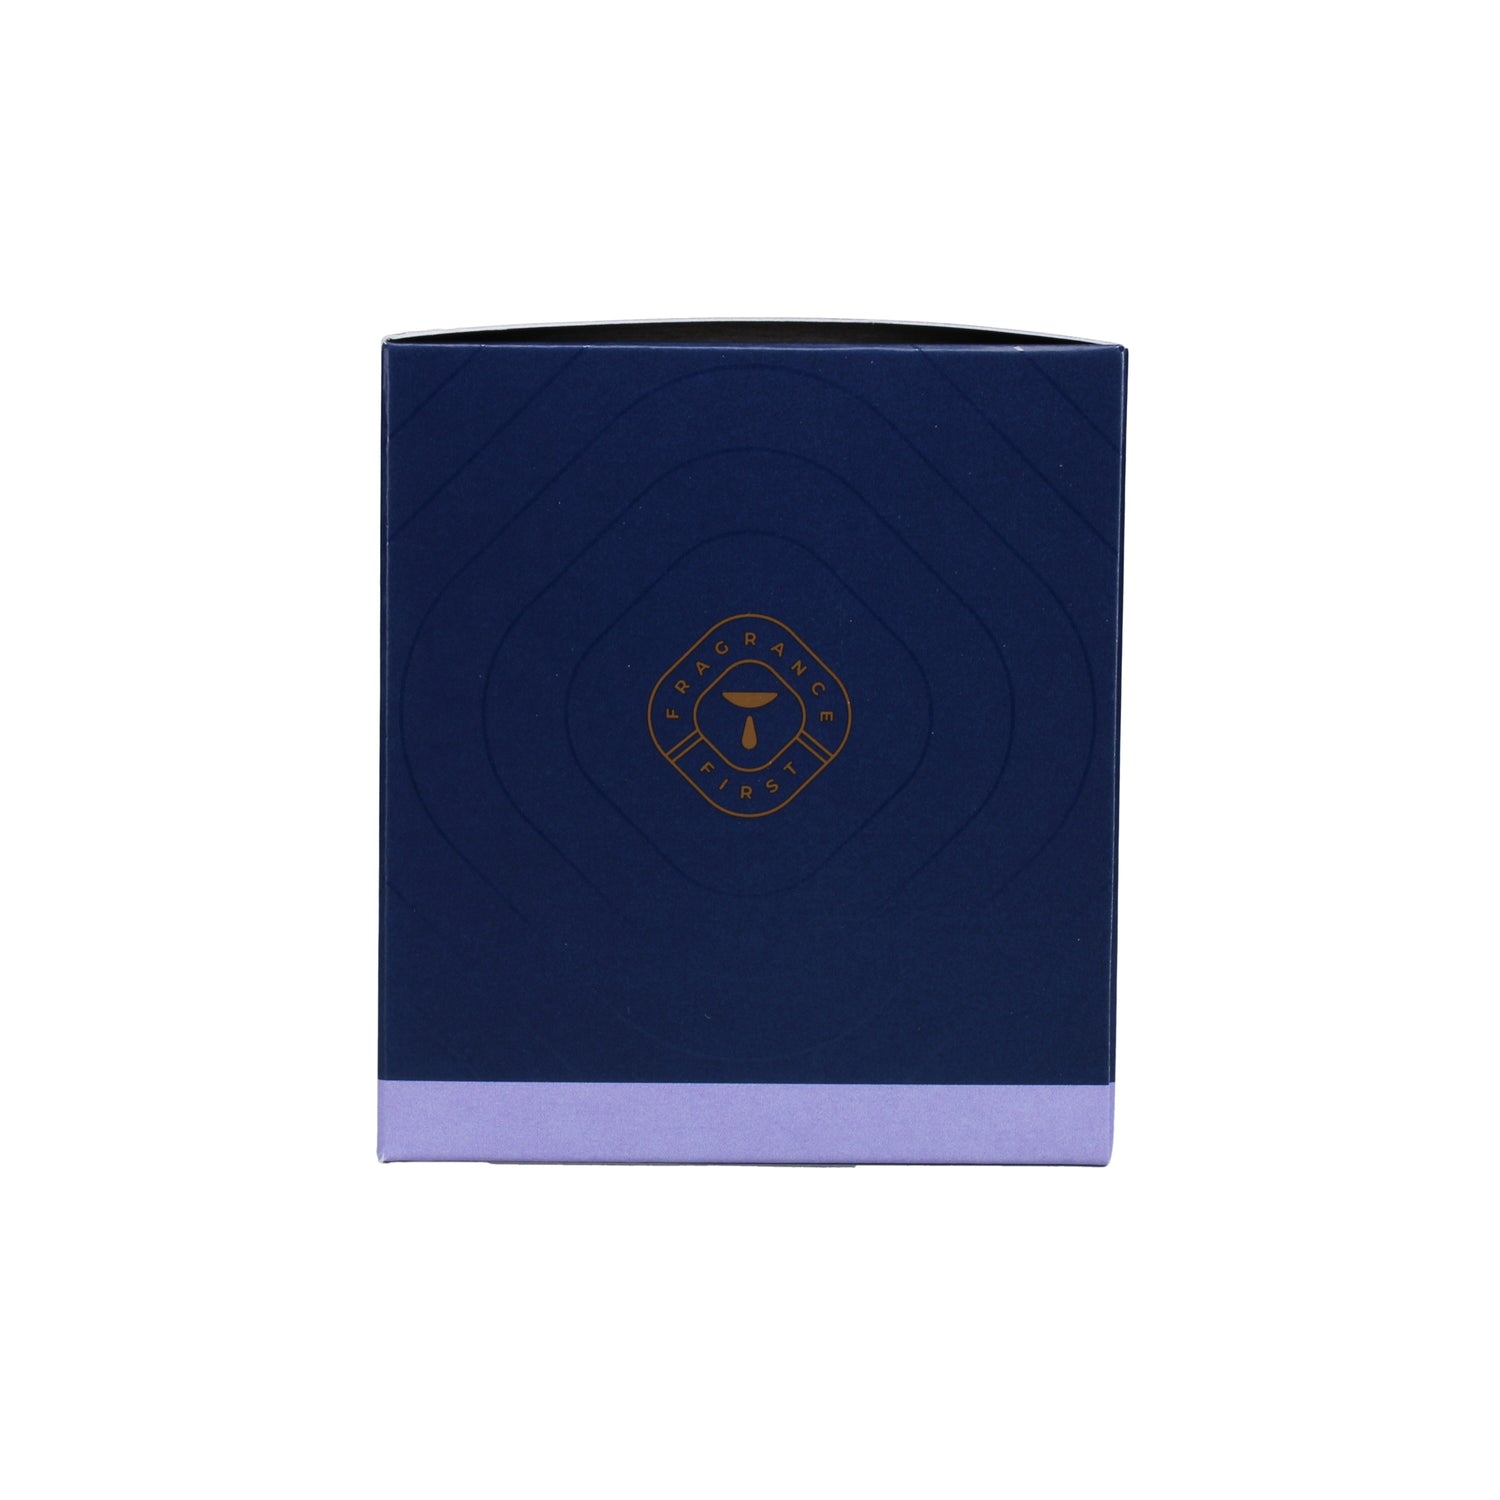 No. 25 Lavender de Provence 7 oz. Candle in Signature Box Image 4